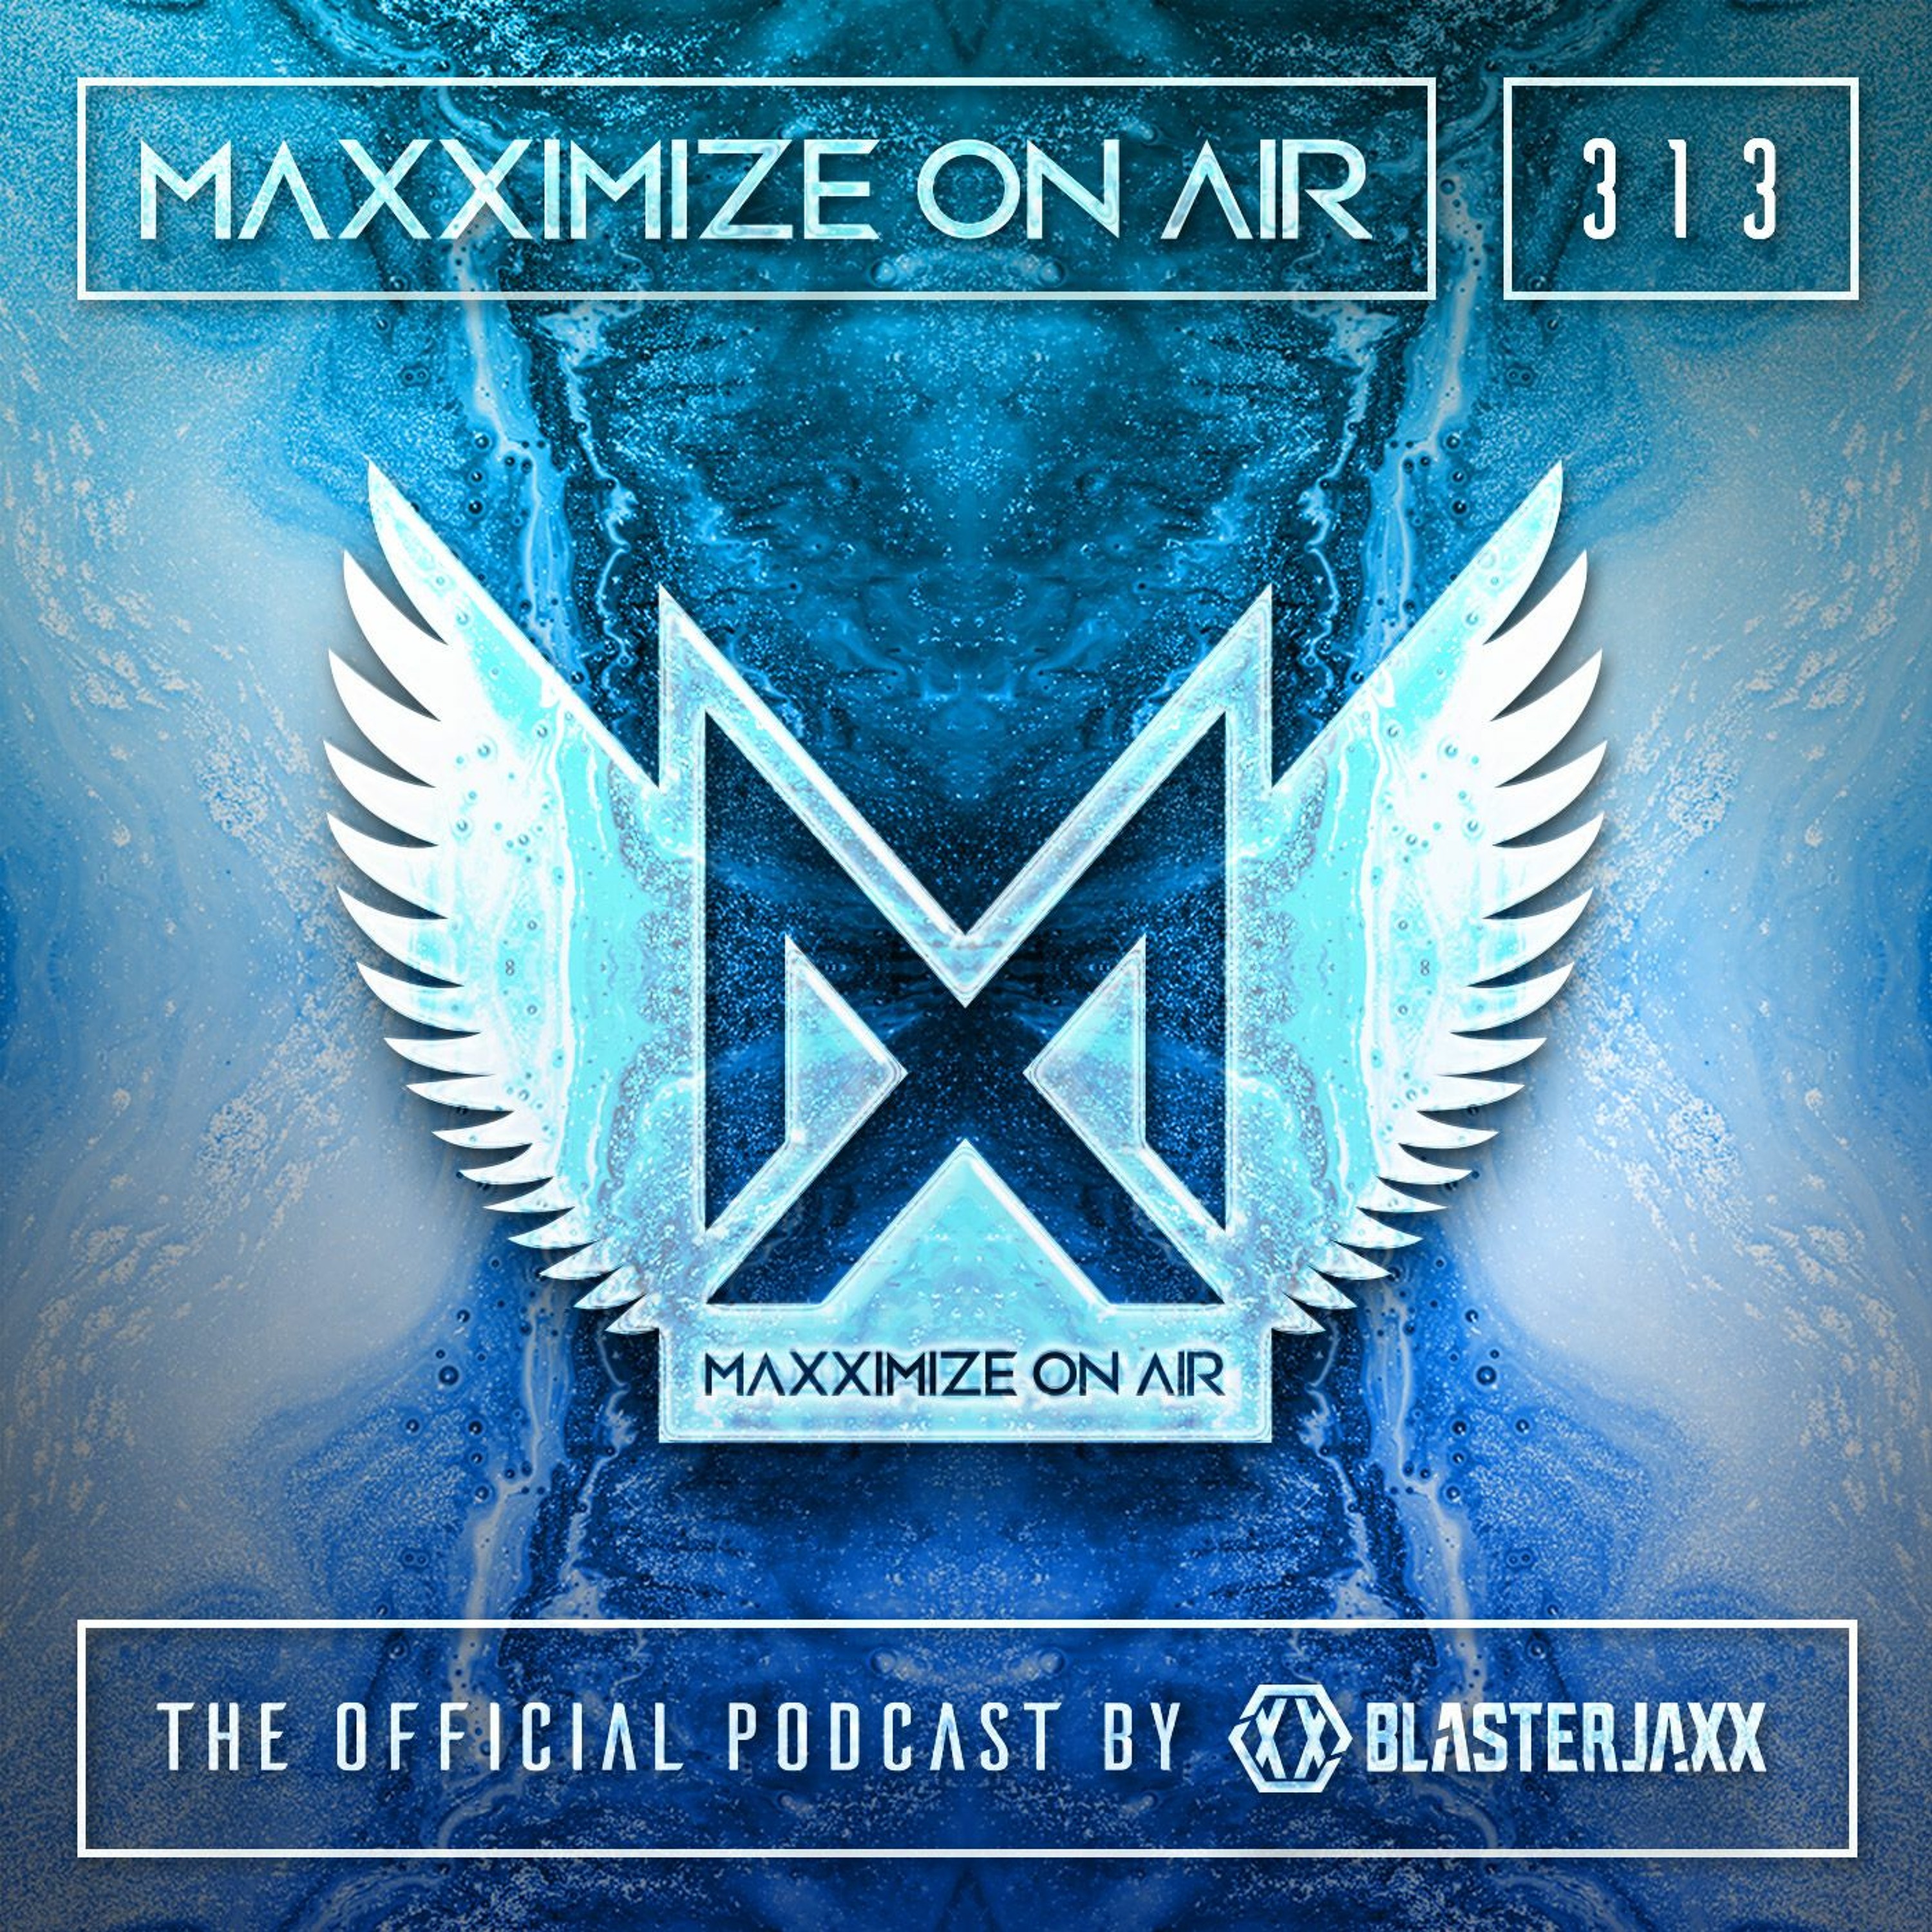 Blasterjaxx present Maxximize On Air #313